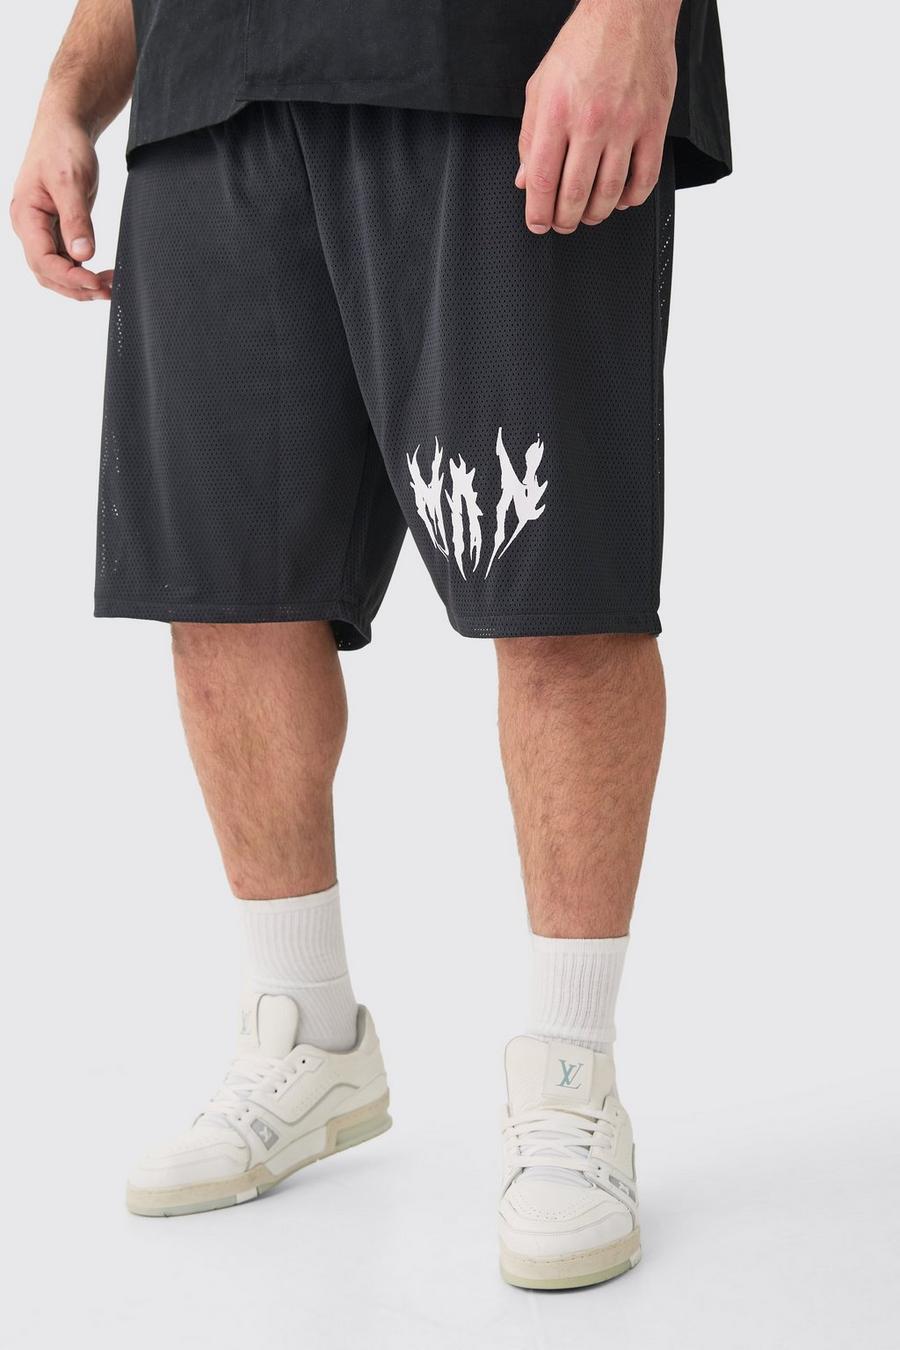 Pantalón corto Plus de airtéx con estampado de baloncesto, Black